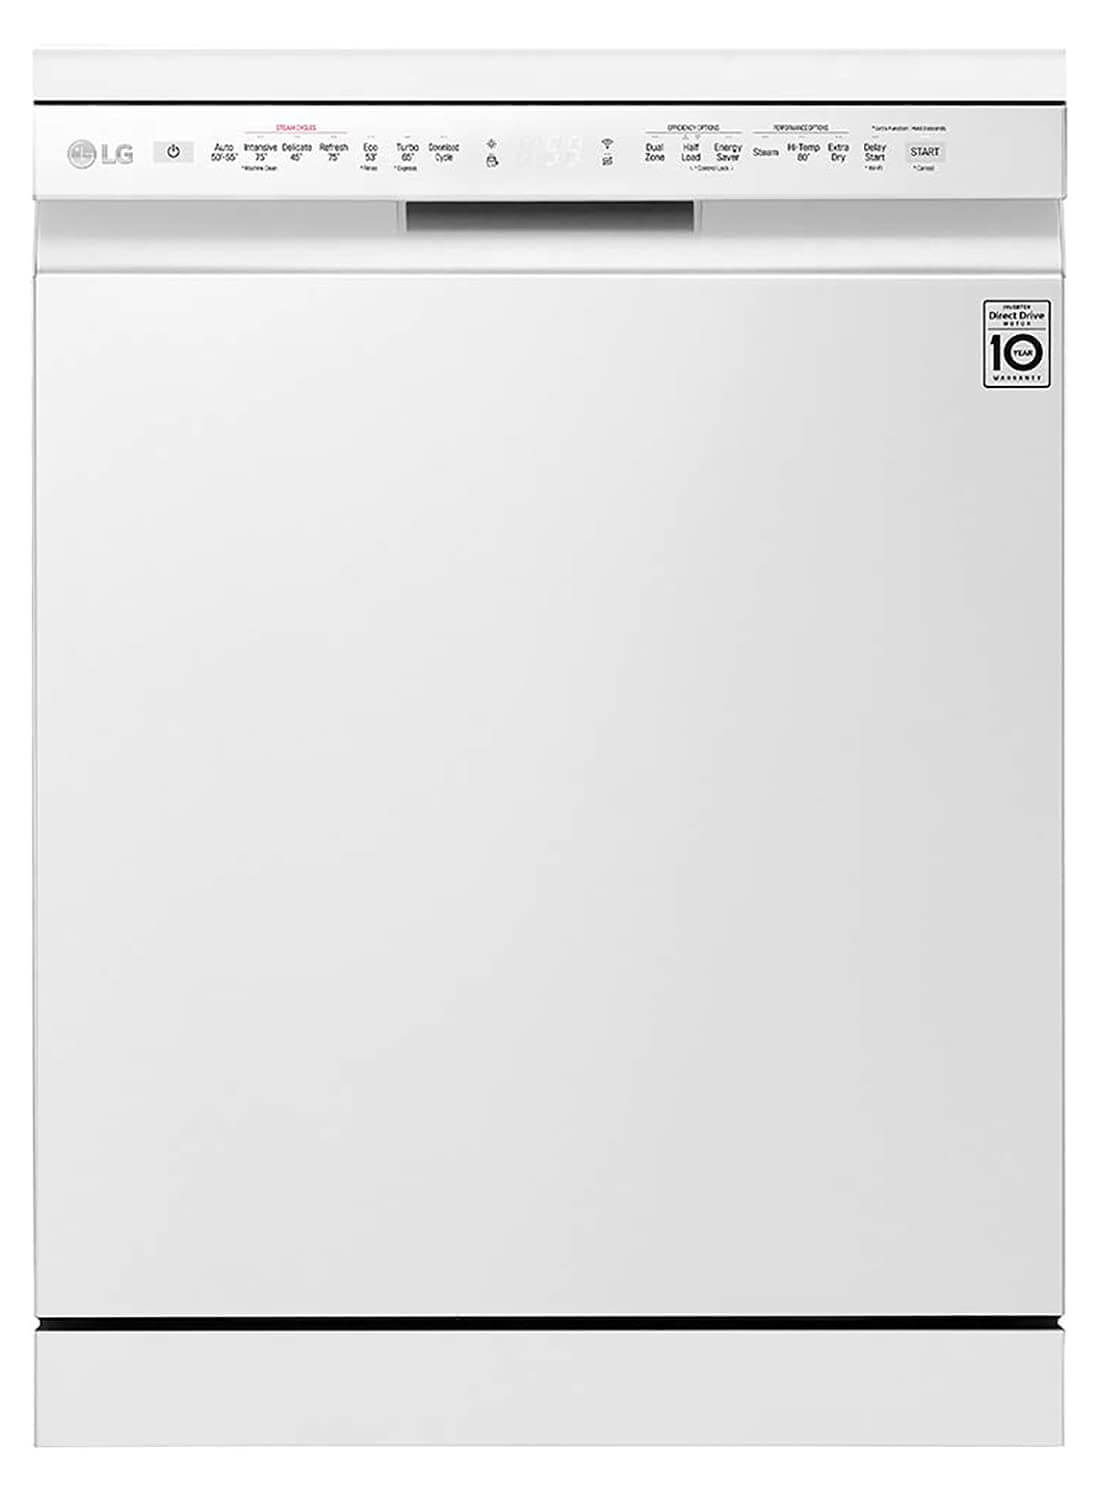  LG 14 Place Settings Dishwasher 